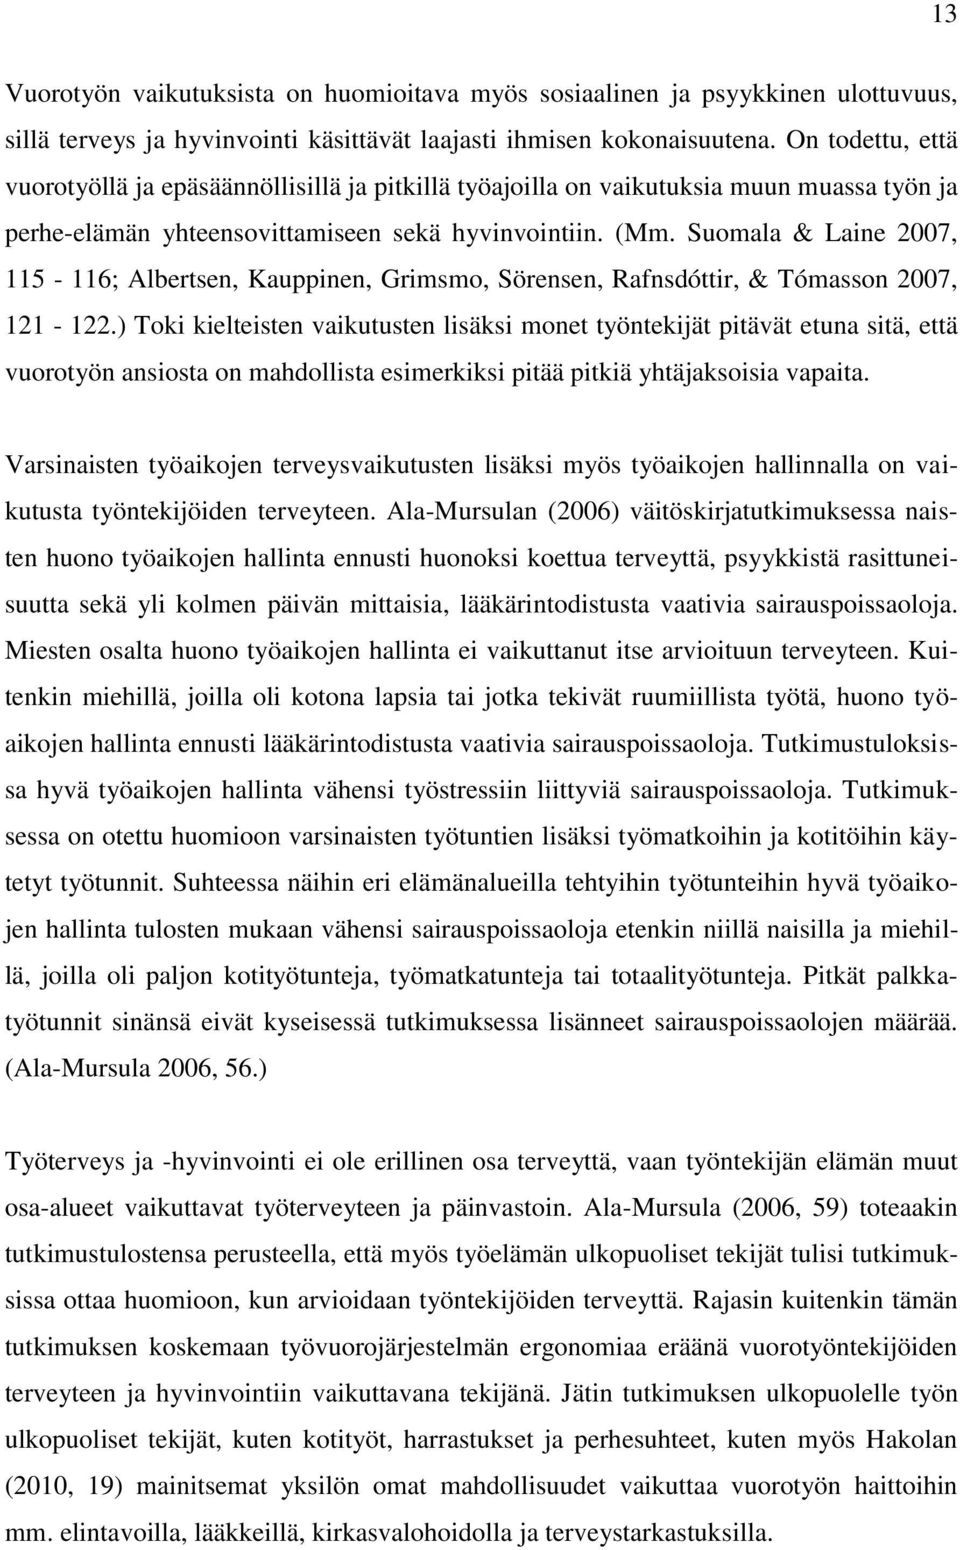 Suomala & Laine 2007, 115-116; Albertsen, Kauppinen, Grimsmo, Sörensen, Rafnsdóttir, & Tómasson 2007, 121-122.